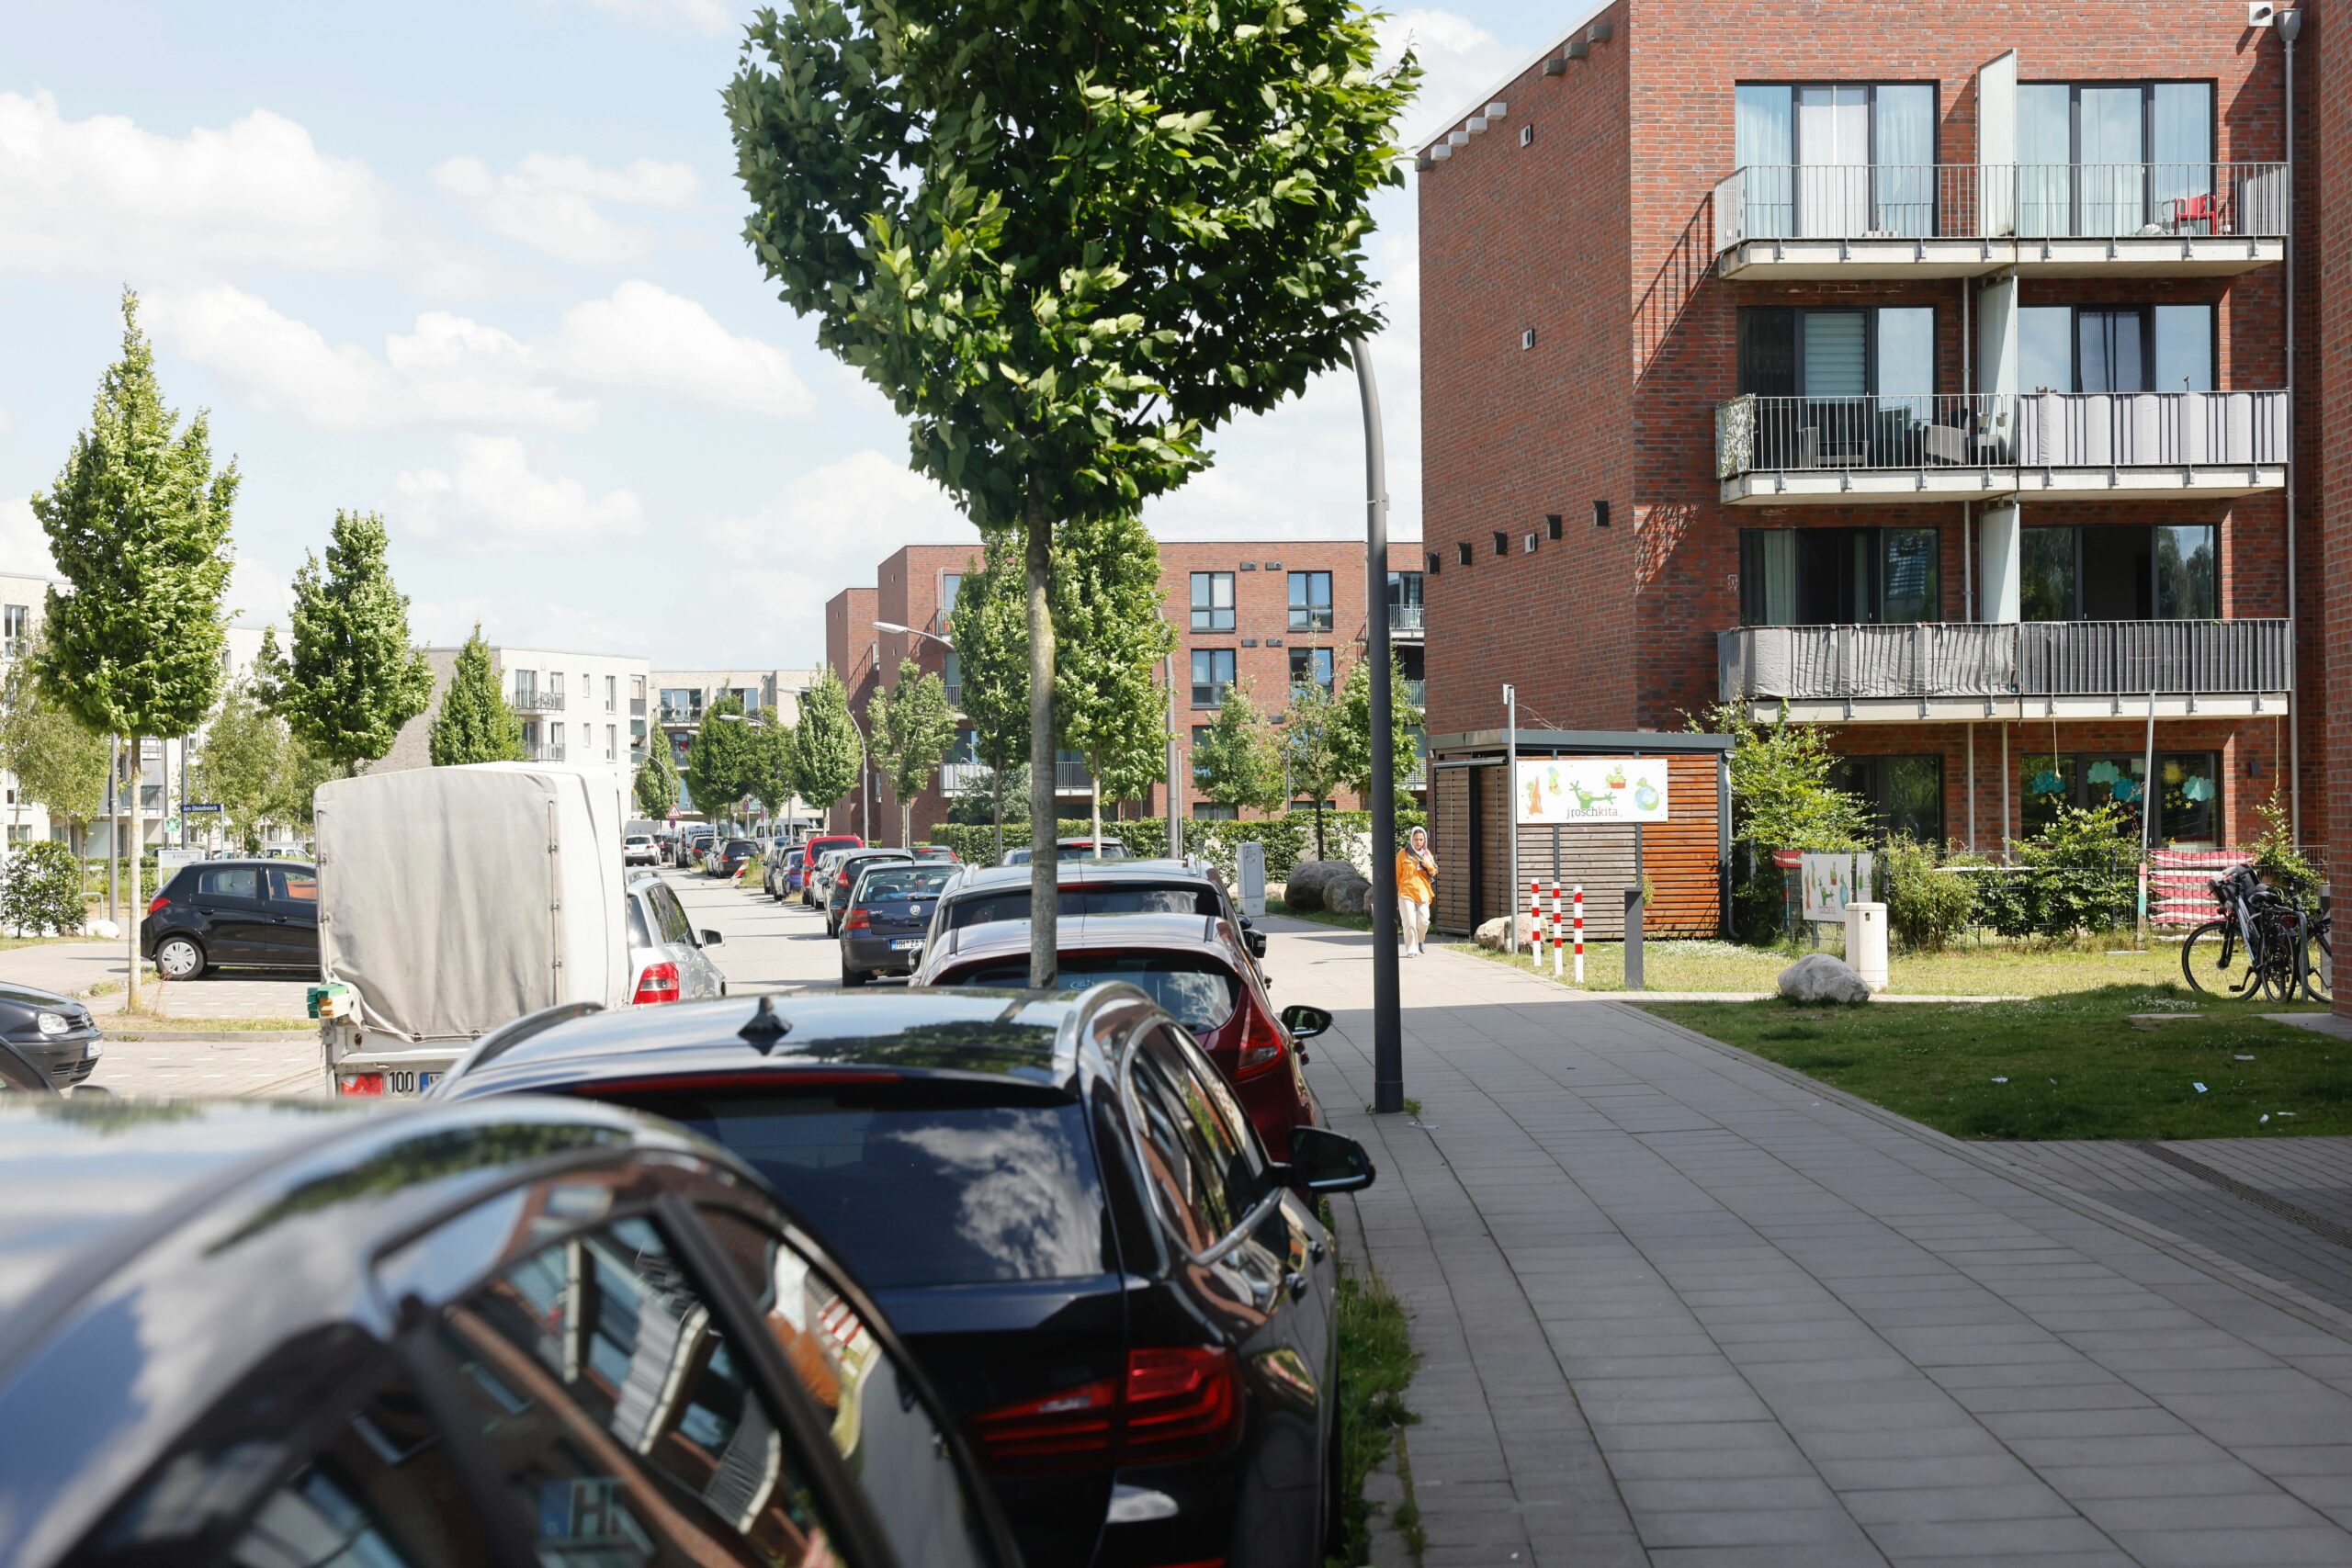 Immer mehr Bewohner des Neubauviertels Am Gleisdreieck in Billwerder haben eigene Autos. Die Blechlawine breitet sich in den umliegenden Wohnstraßen aus.